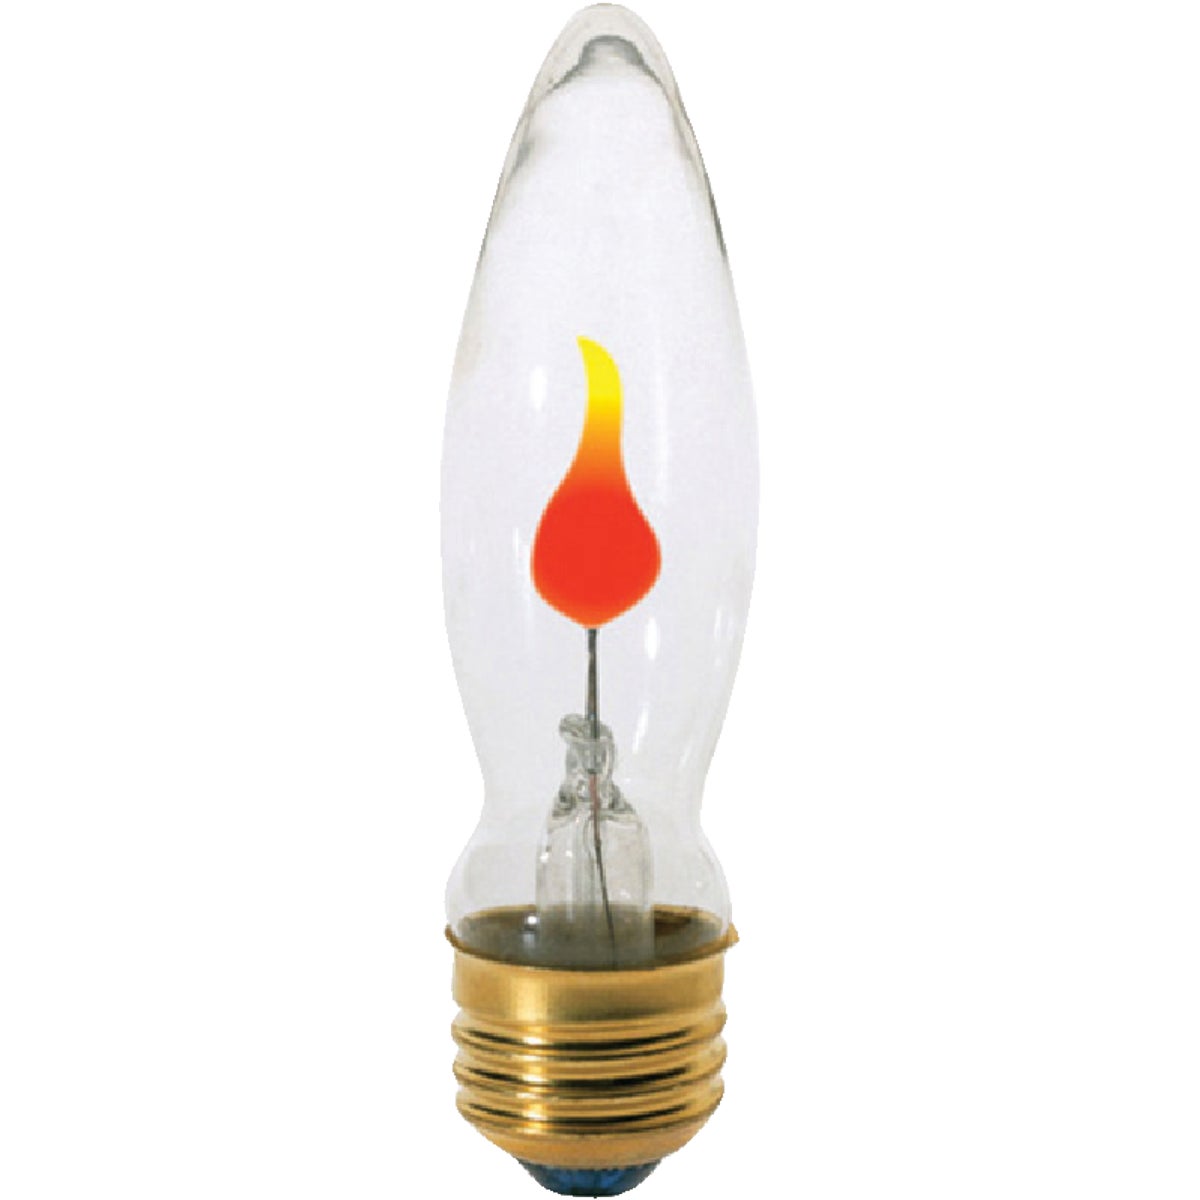 Item 526675, CA9, medium base, flicker flame, decorative incandescent light bulb.